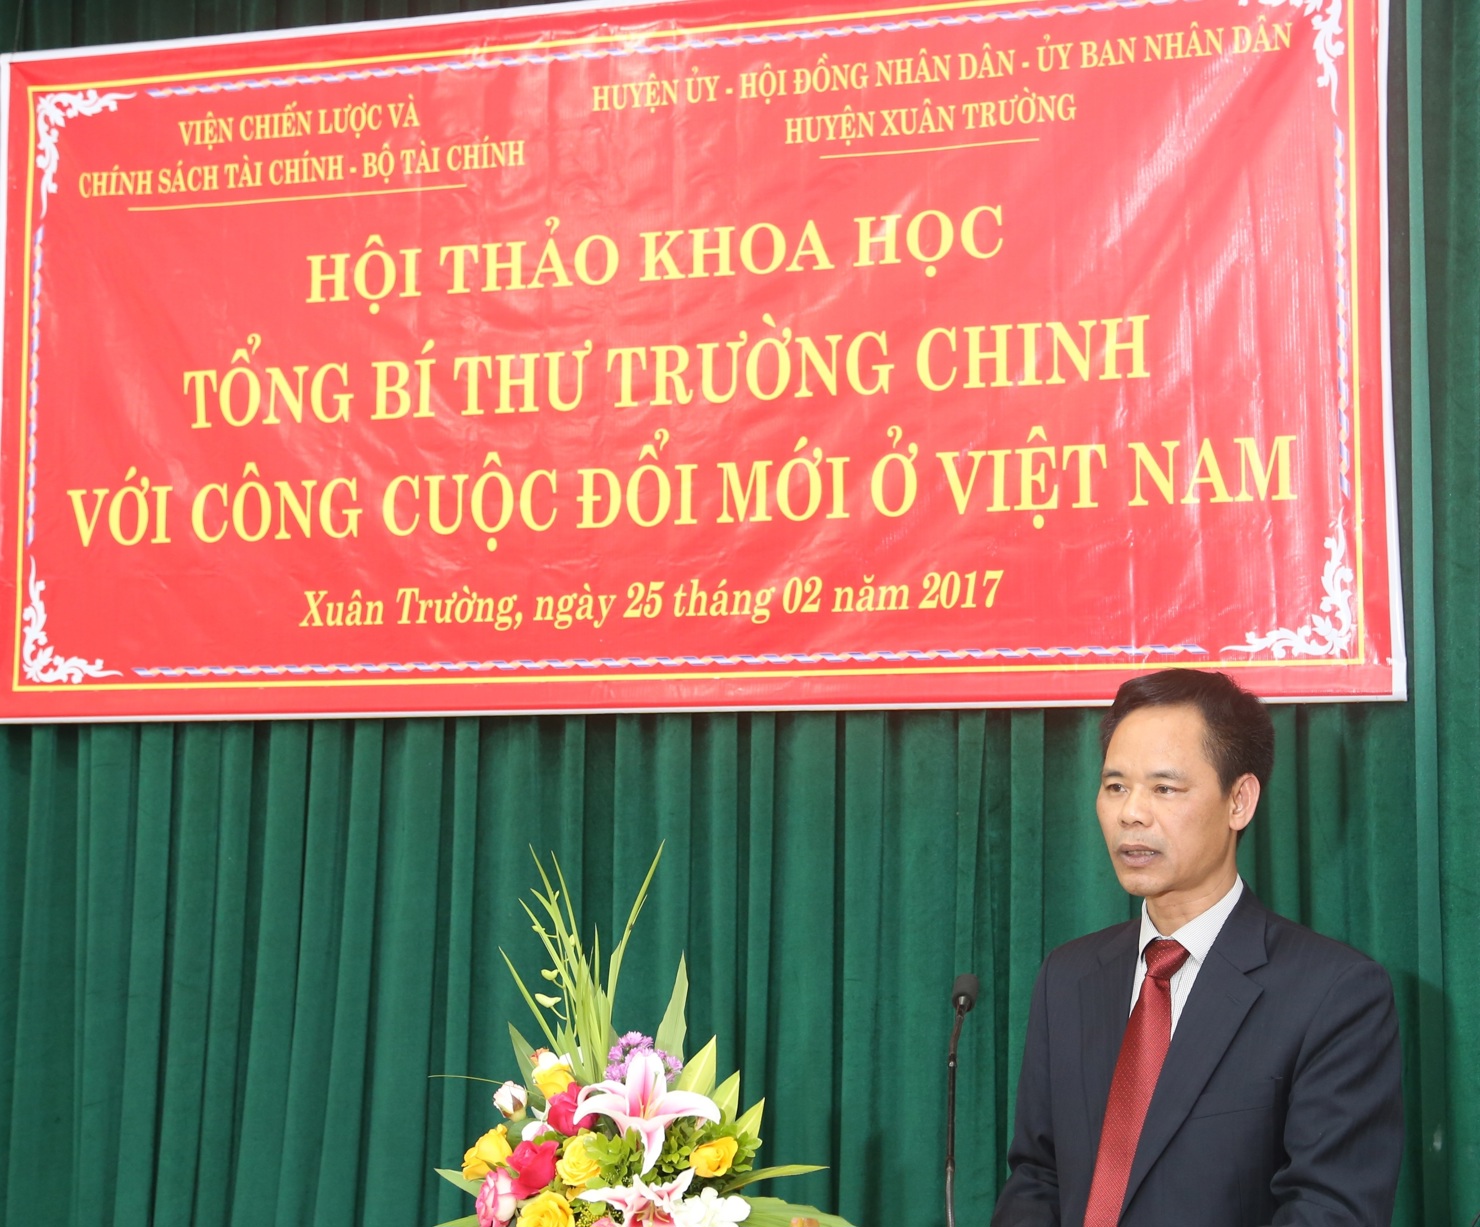 TS. Nguyễn Viết Lợi, Bí thư chi Bộ, Viện trưởng Viện CL&CSTC phát biểu tại Hội thảo “Tổng Bí thư Trường Chinh với công cuộc đổi mới ở Việt Nam”.